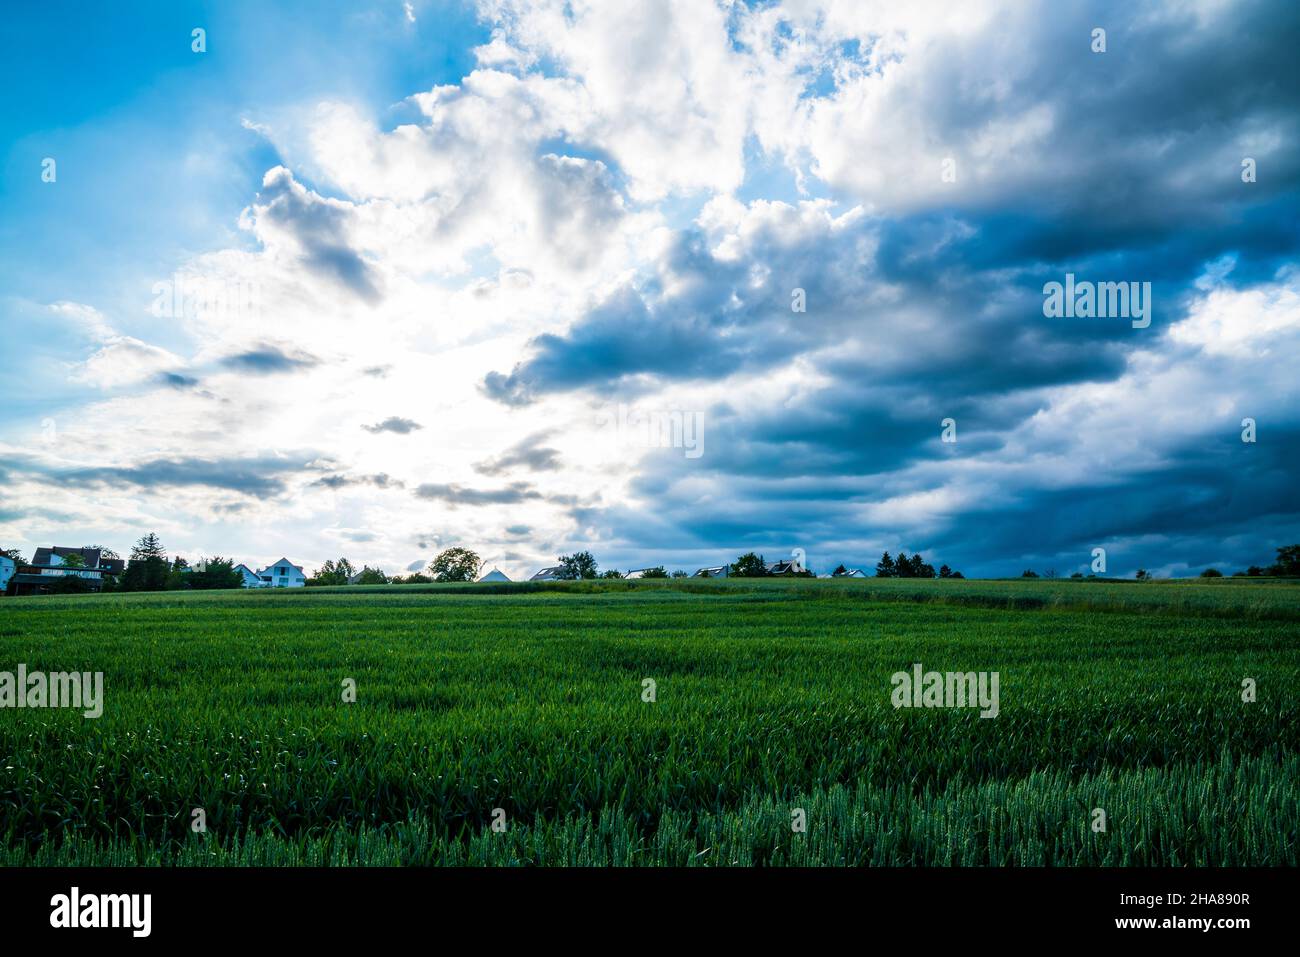 Los campos verdes del paisaje de la naturaleza con el cielo dramático de la tormenta y las nubes oscuras en la estación del verano Foto de stock